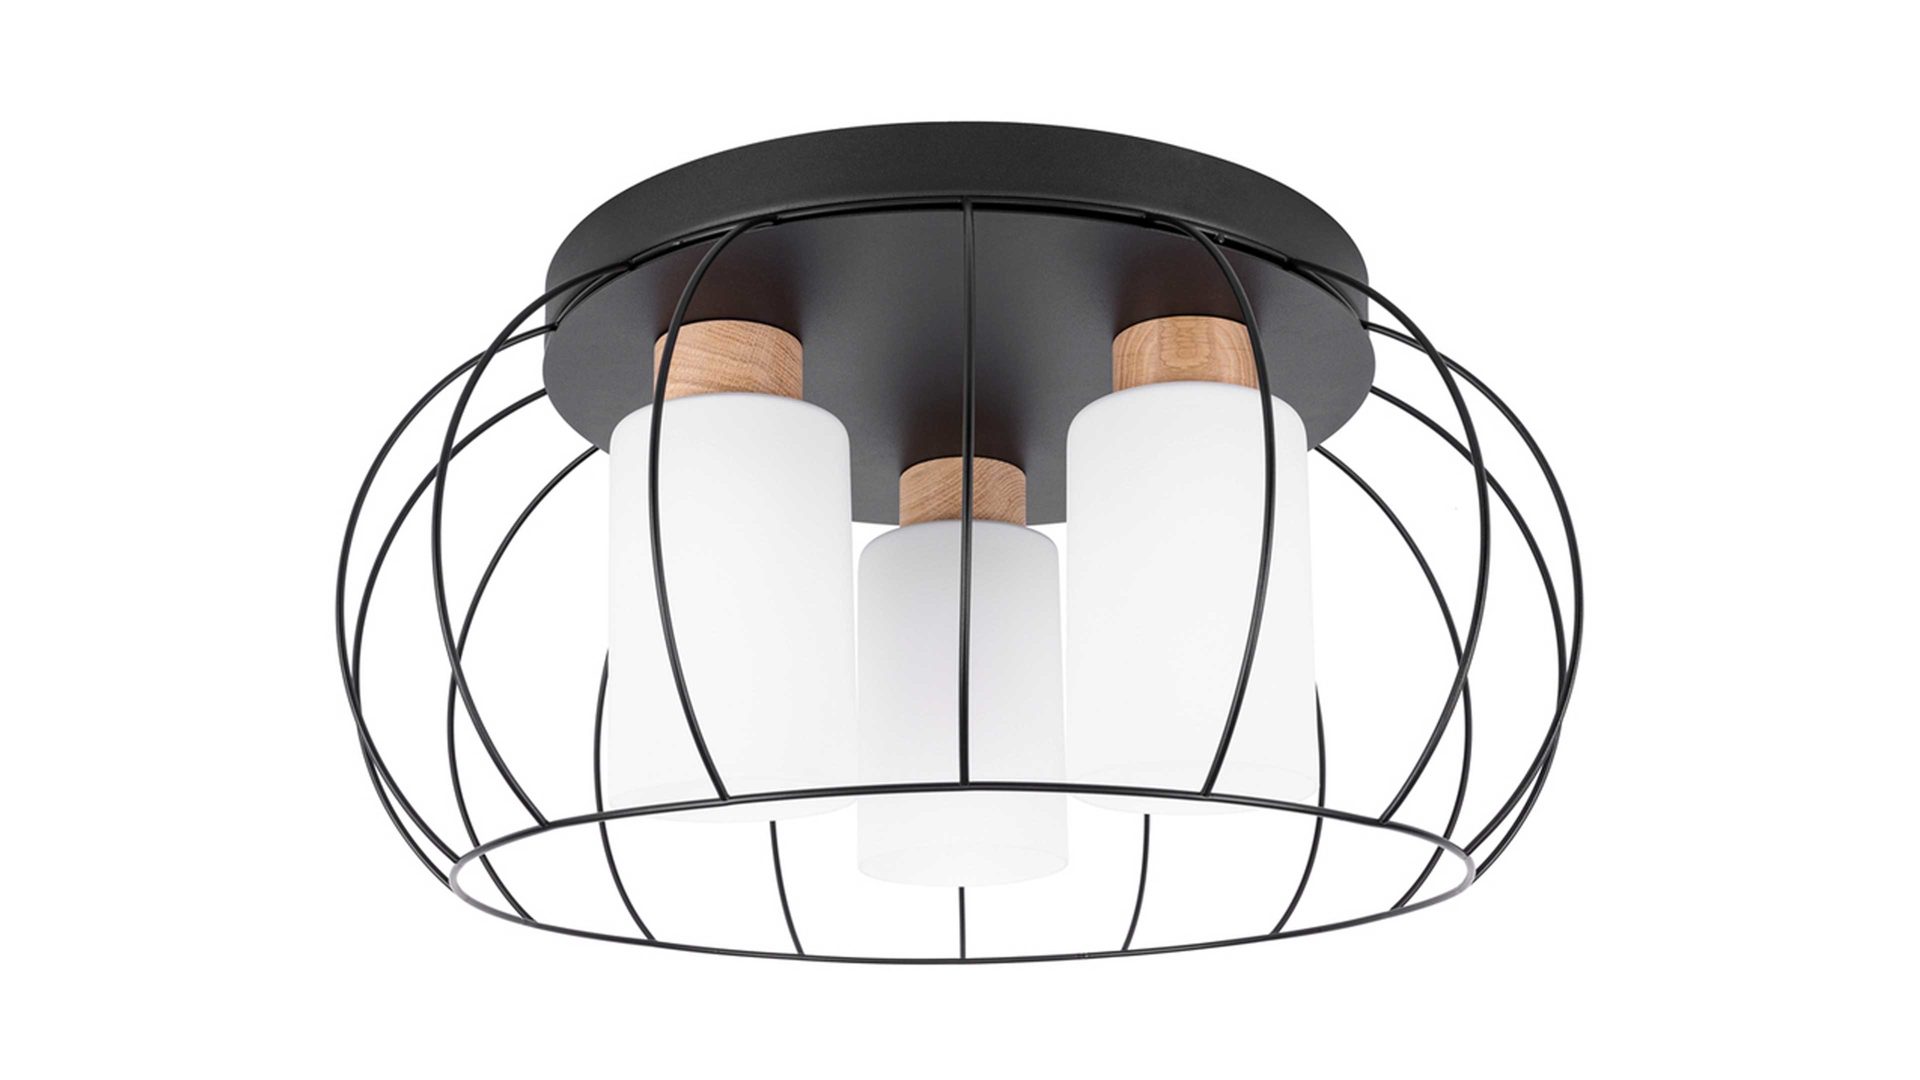 Deckenleuchte Spot light aus Metall in Schwarz SPOT LIGHT Leuchten Serie Mostar - Deckenlampe schwarzes Metall & weißes Glas - Durchmesser ca. 30 cm